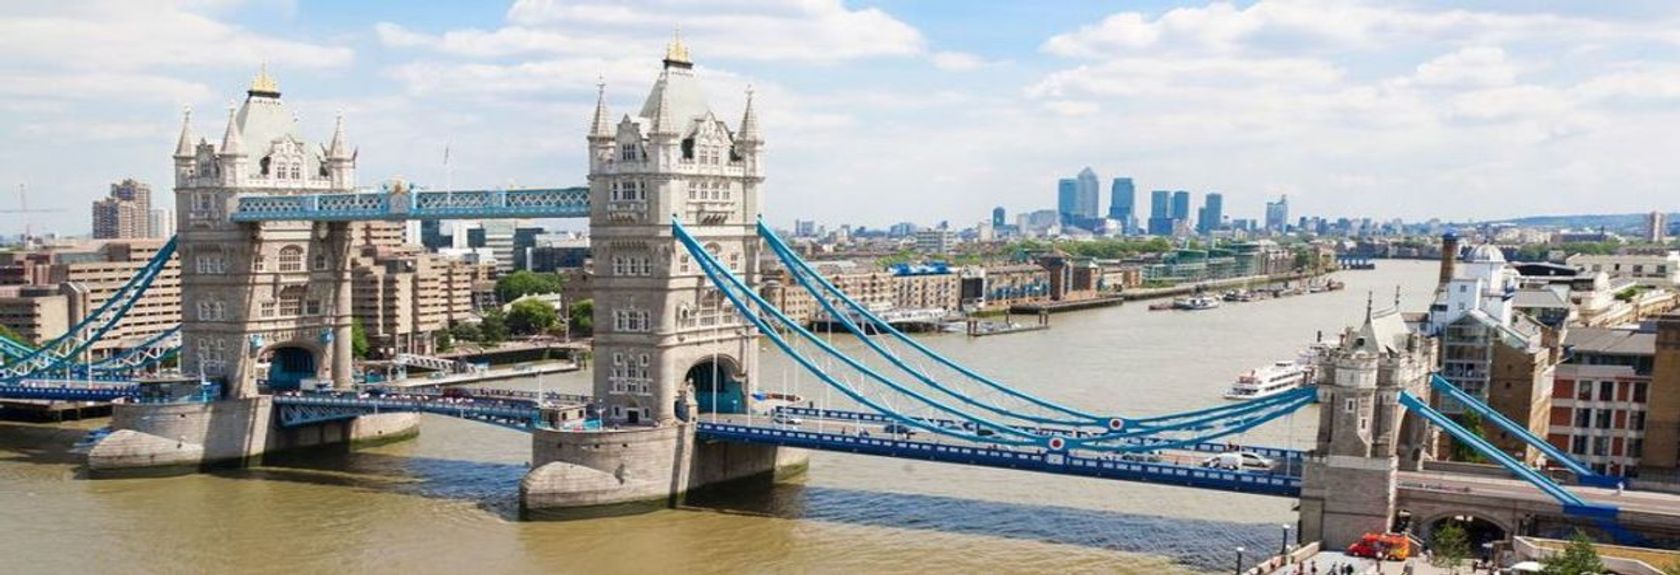 A ponte mais famosa de Londres é sem dúvida a Tower Bridge. Esta ponte vitoriana de 244 metros de comprimento sobre o Tamisa tem sido um elo muito importante entre as duas partes de Londres desde a sua construção em 1894 e hoje cerca de 40.000 pessoas passam pela ponte todos os dias. A ponte pode ser aberta, mas as pessoas tentam evitar isso o máximo possível. A ponte abre cerca de 900 vezes por ano.